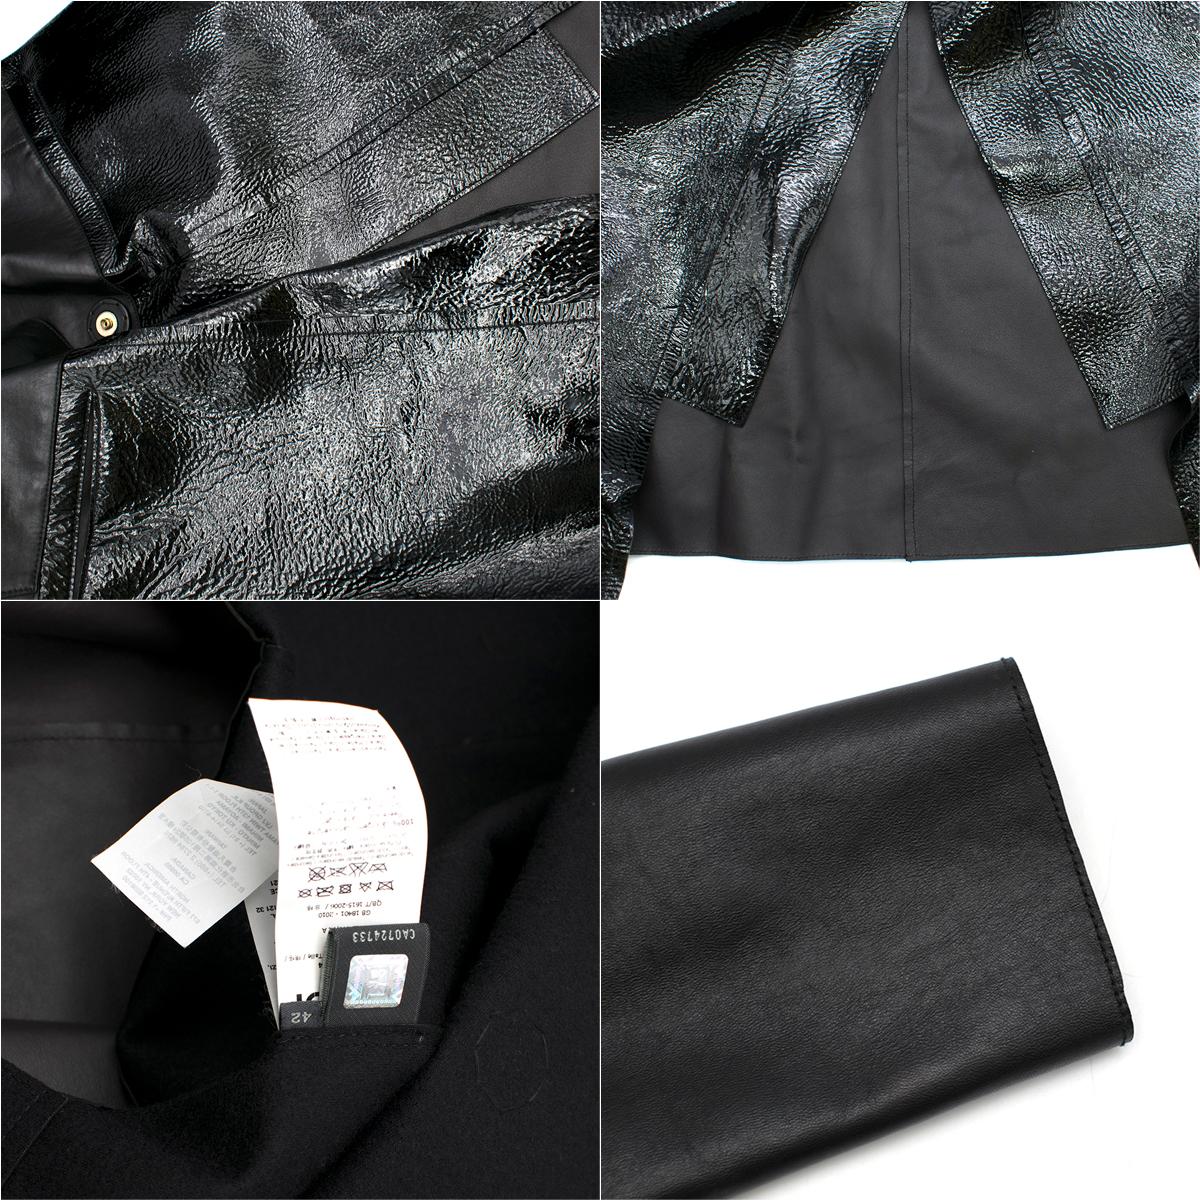 Fendi Black Leather Two Toned Coat - Size US 6 6